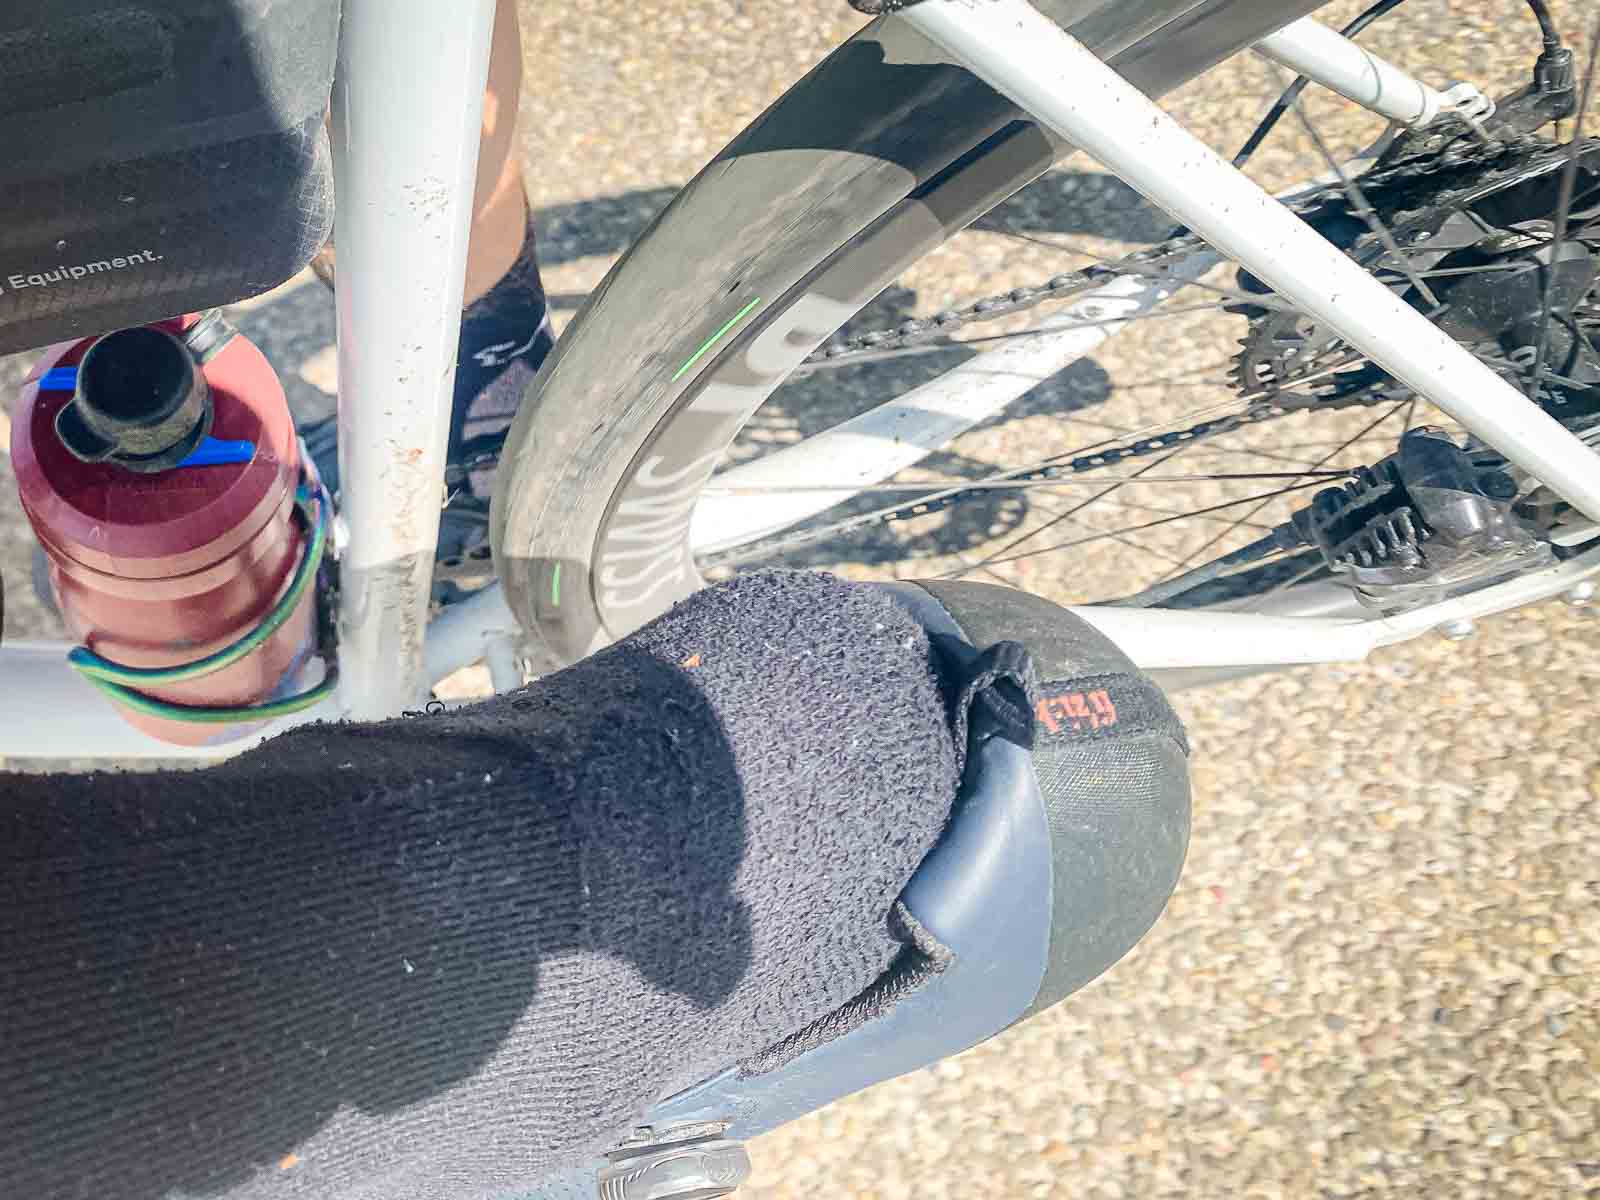 Een pikhouweel steekt uit een fietsschoen tijdens het fietsen